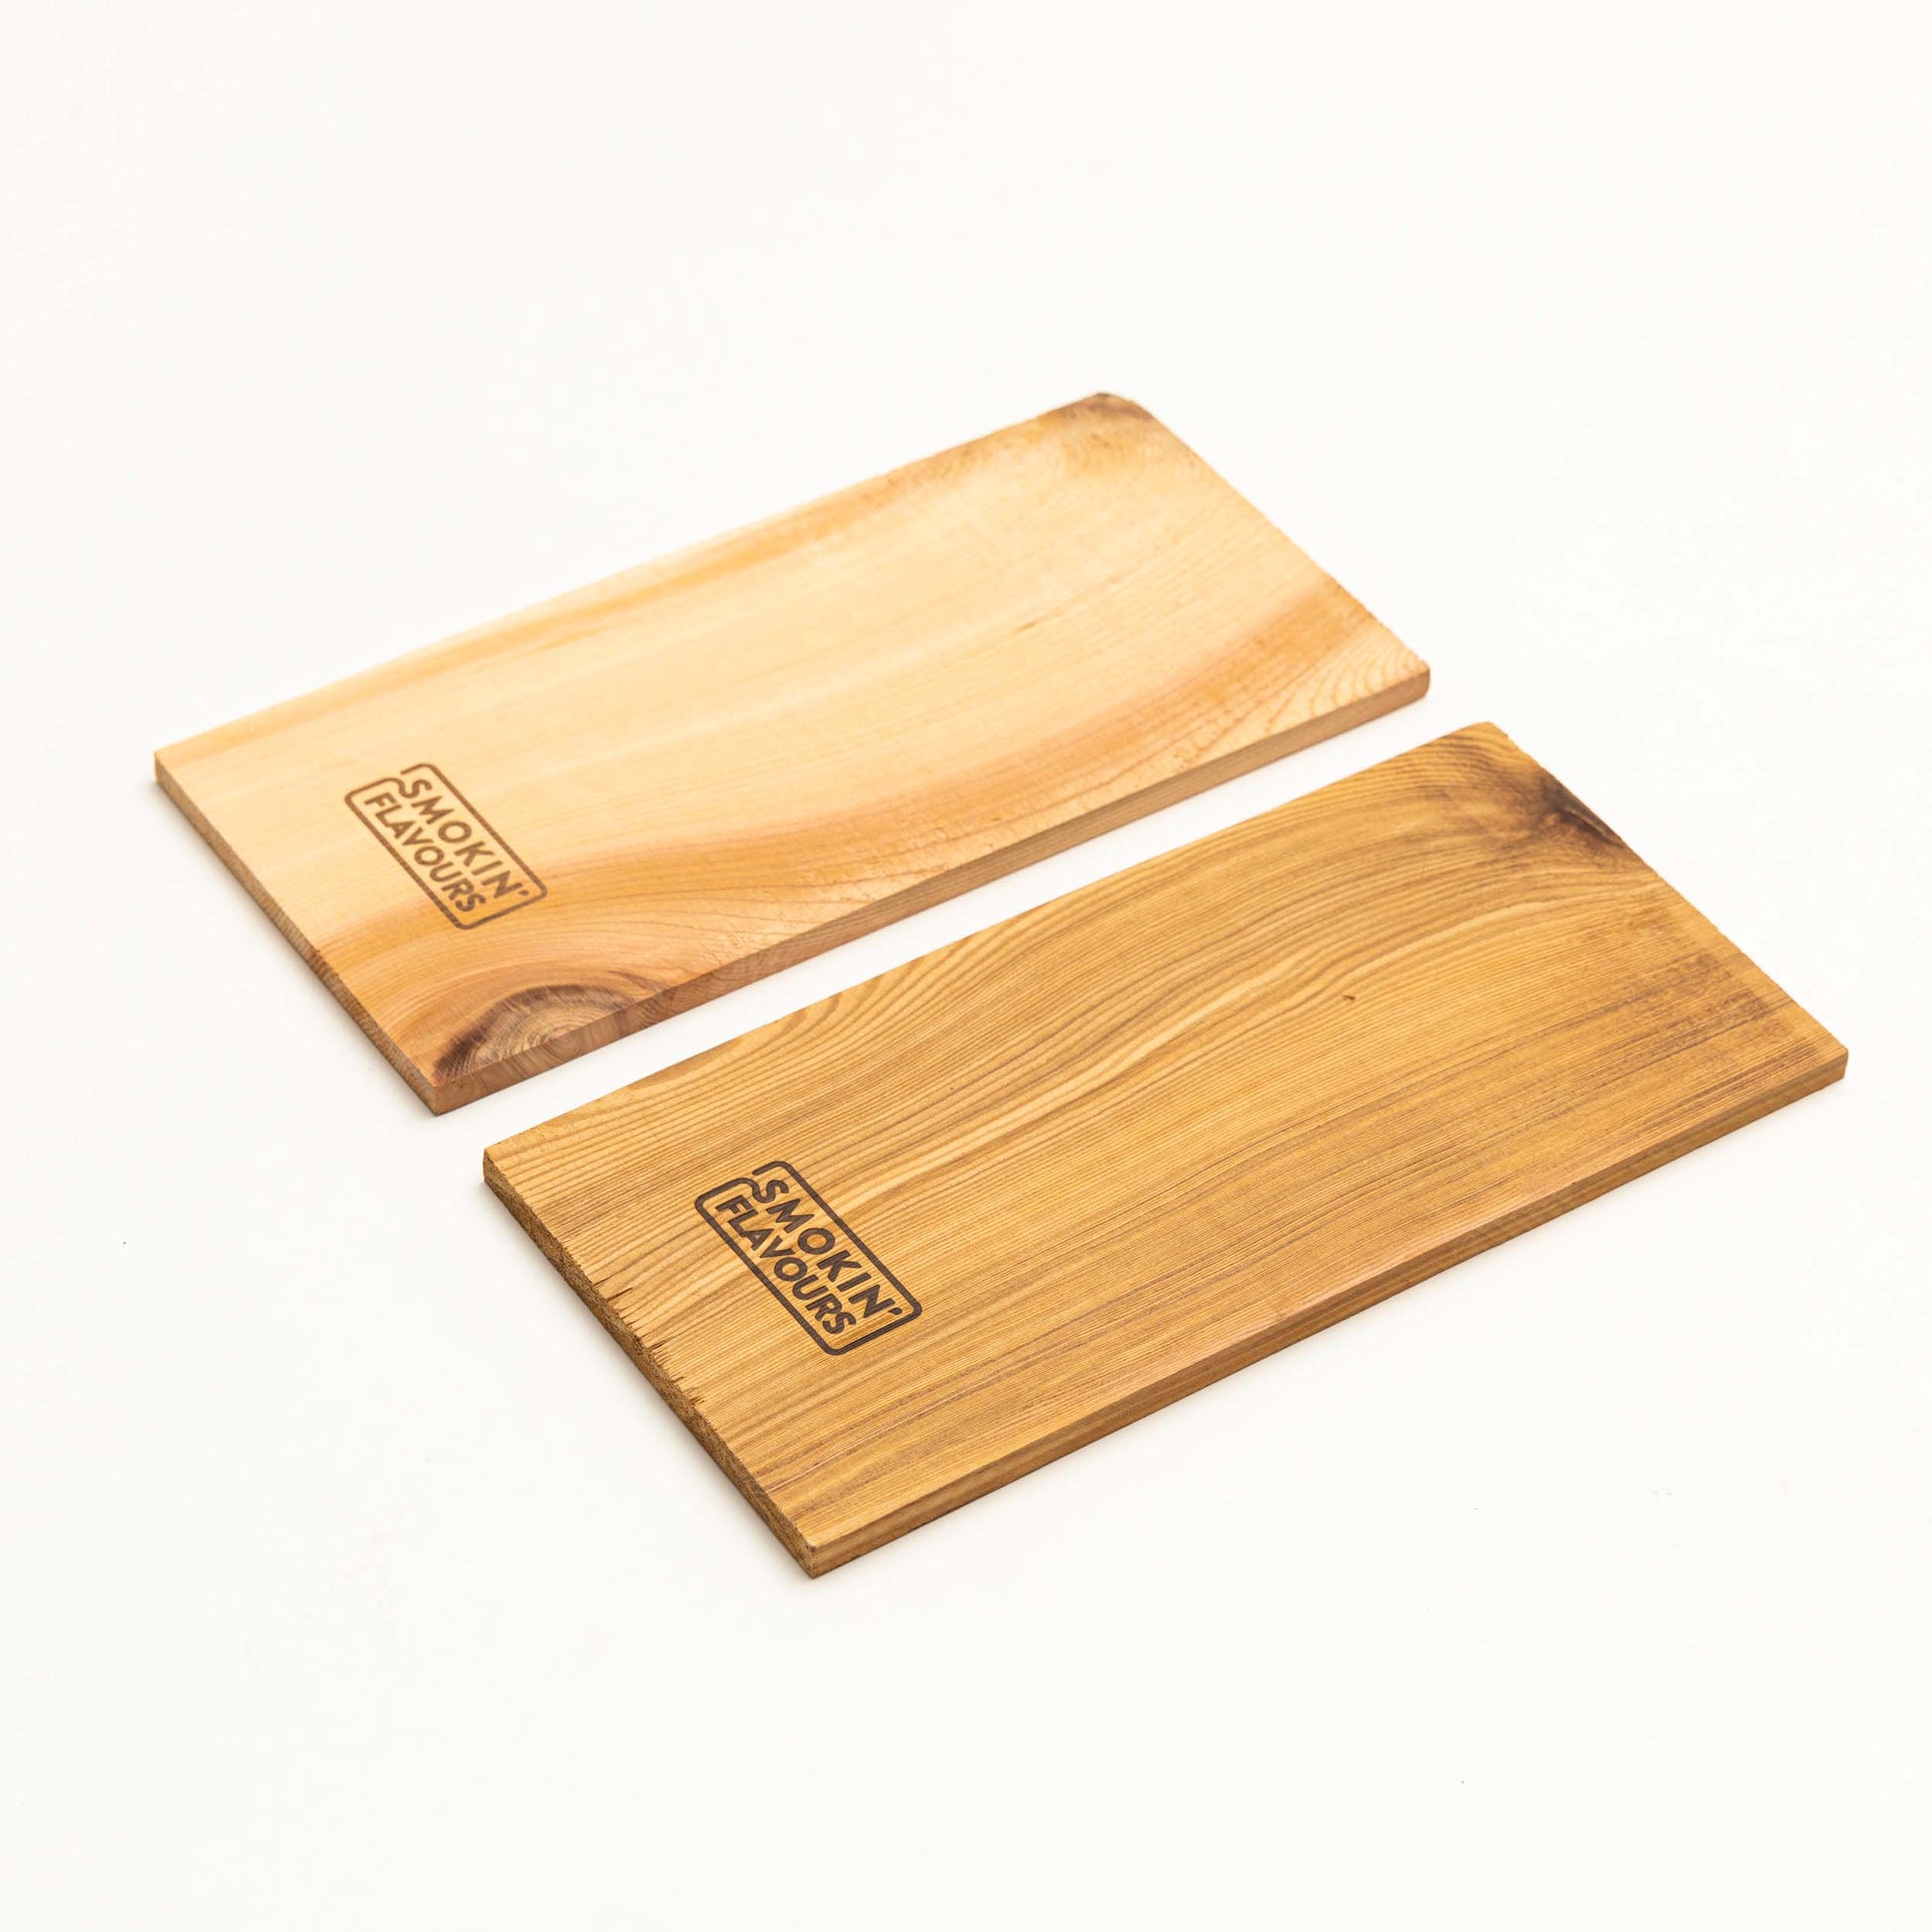 Smokin' Flavours cederhouten planken 2 stuks - 30x15 cm - kamadogrills